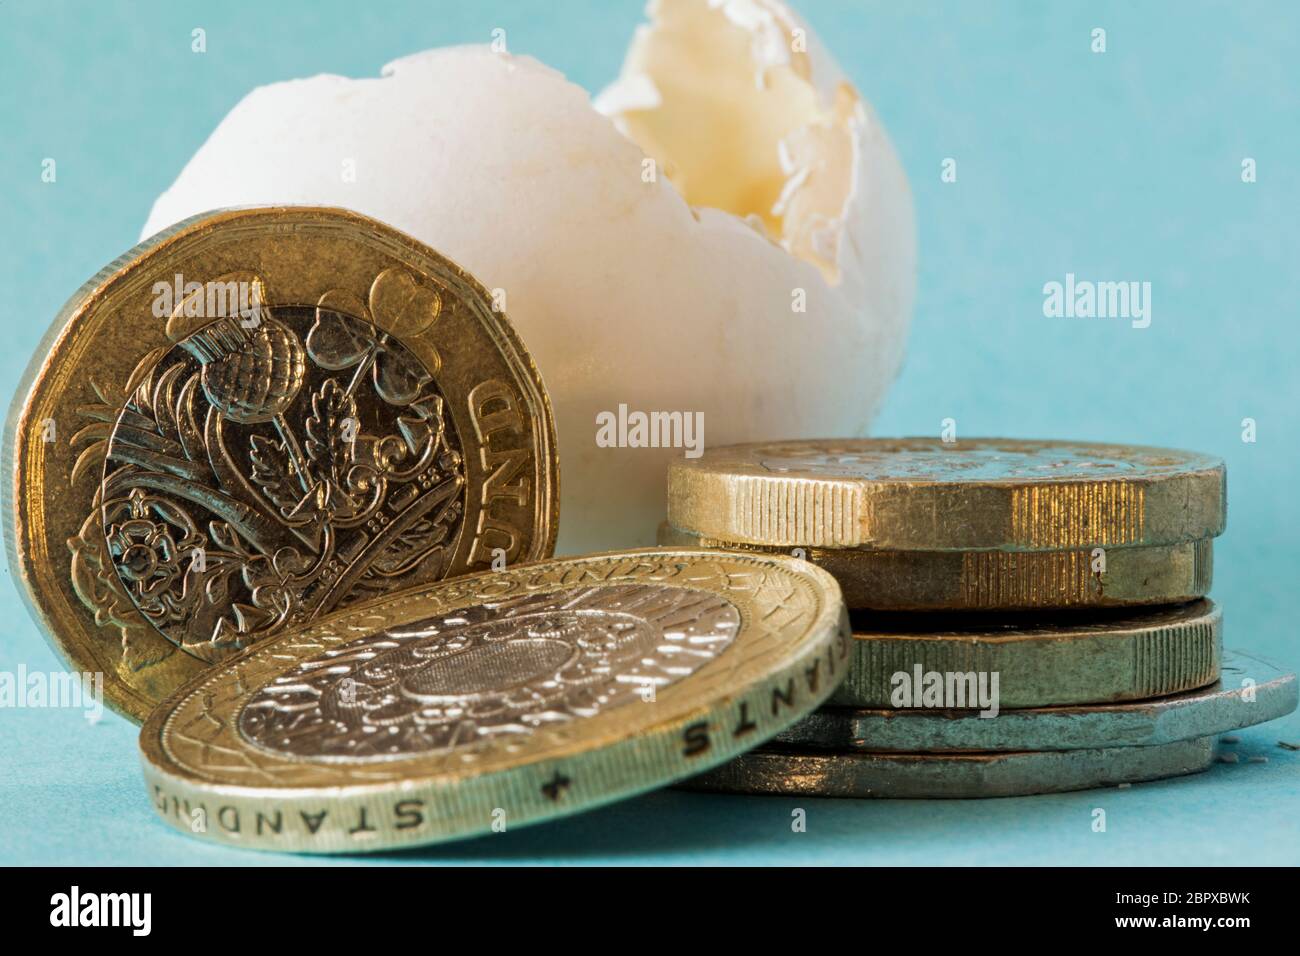 Ethisch bezog Wildvogeleierschale schoss nah oben mit britischen Pfundmünzen, einer zwei-Pfund-Münze und ungefähr 50 Pence Stücke. Stockfoto